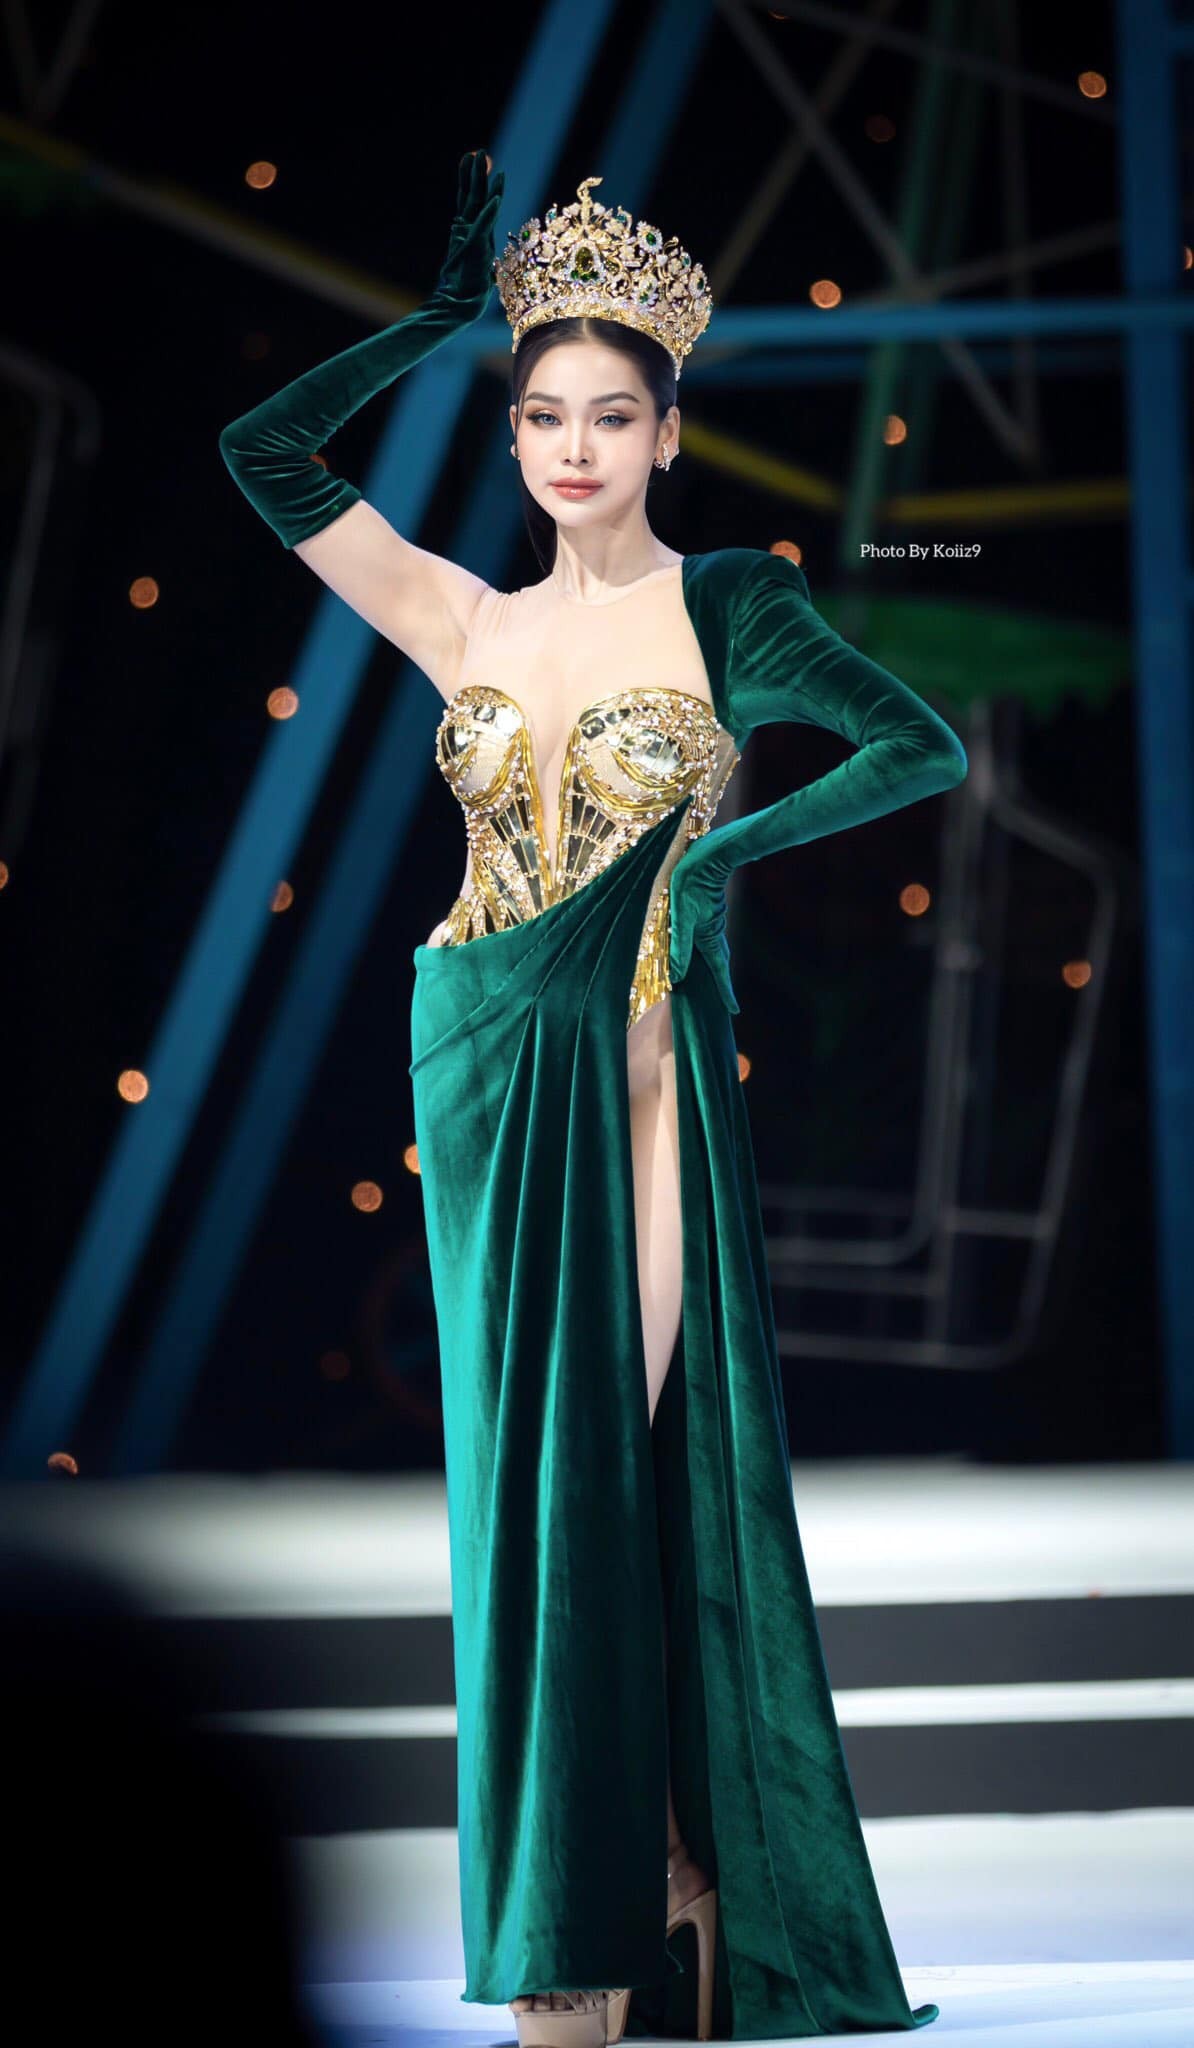 Hoa hậu Hòa bình Thái Lan bị chỉ trích vì mặc váy hở nội y - Ảnh 1.